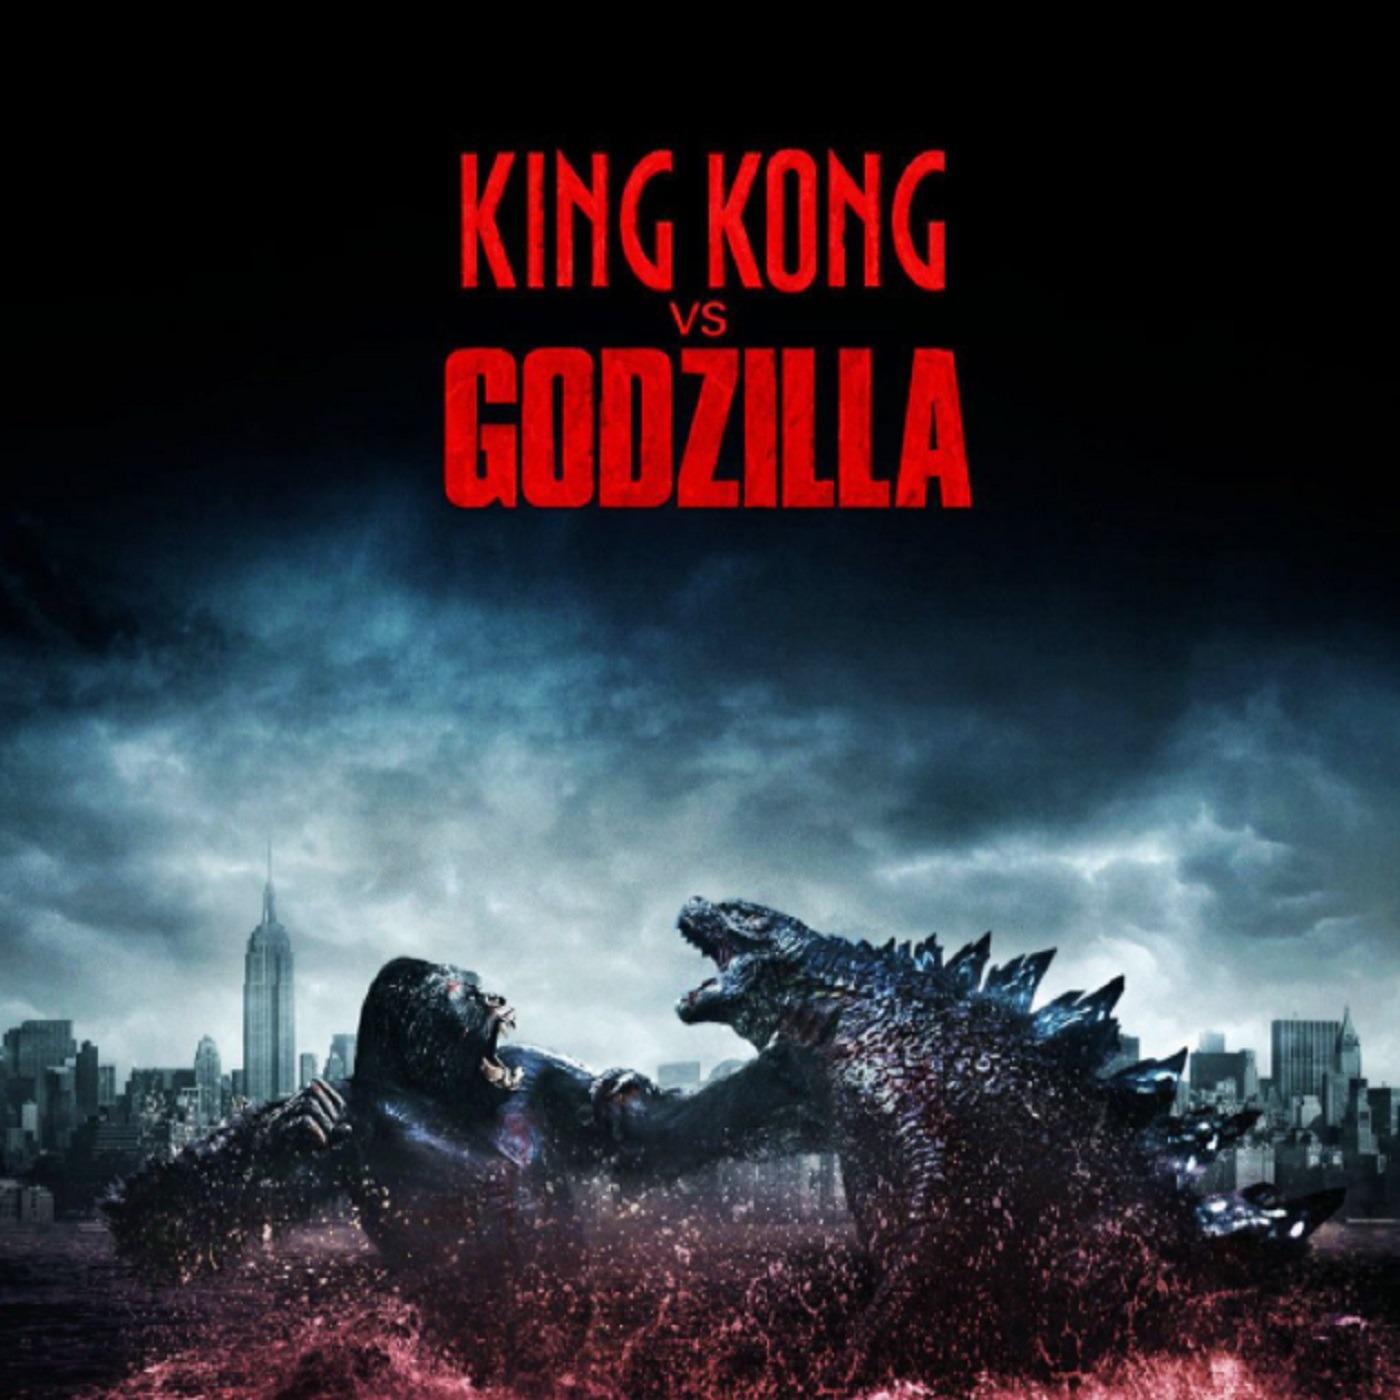 Ver Godzilla vs Kong Pelicula en Español online Gratis y Subtitulado Latino